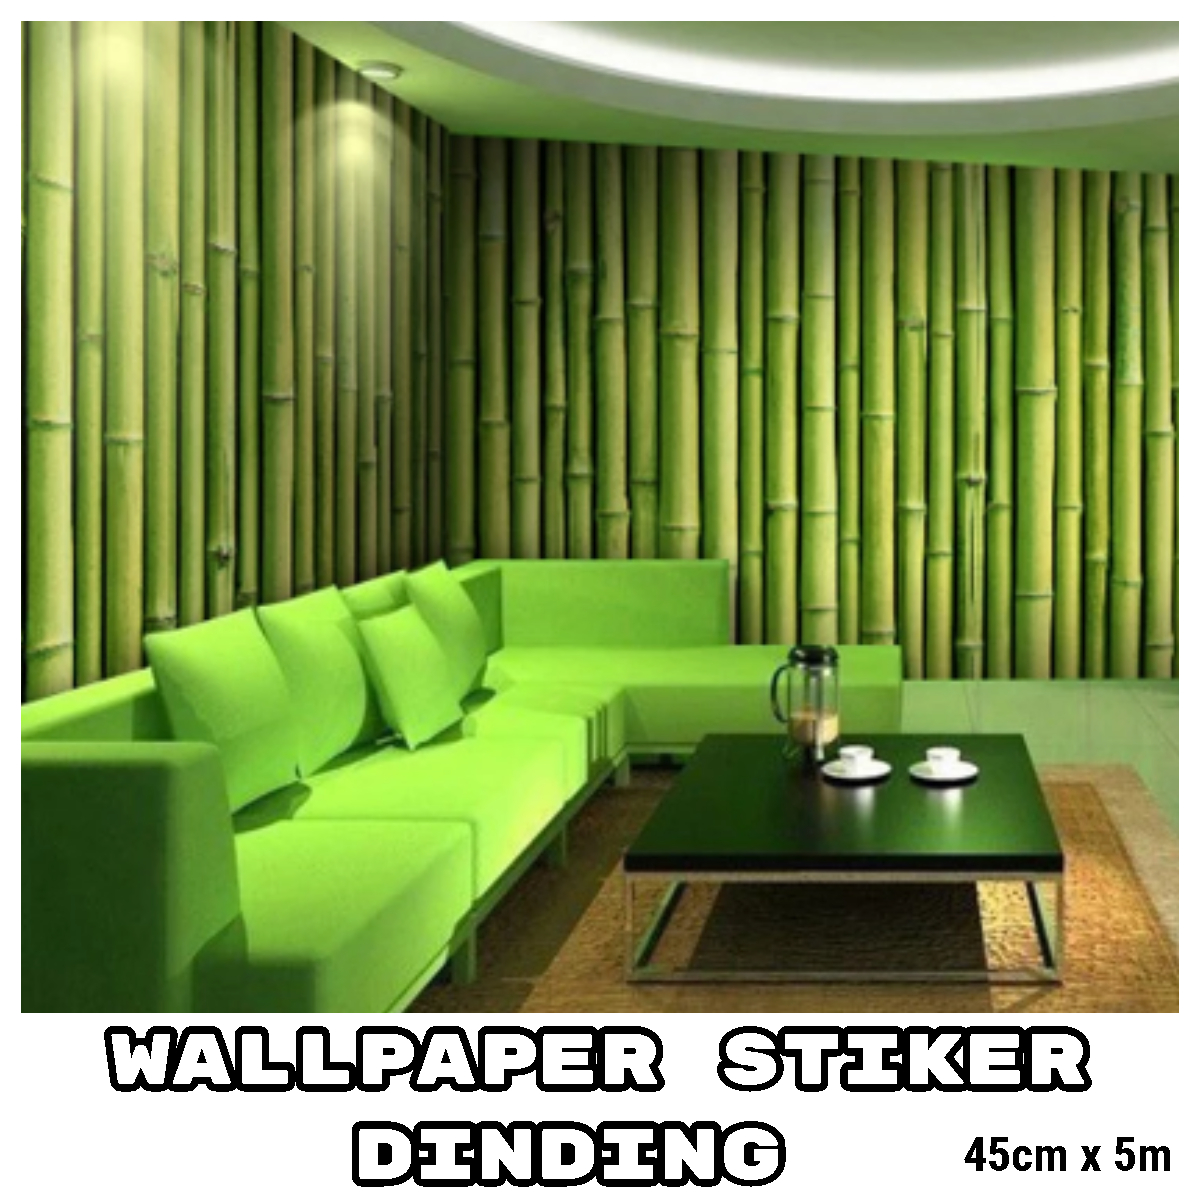 отделка комнаты в зеленом стиле